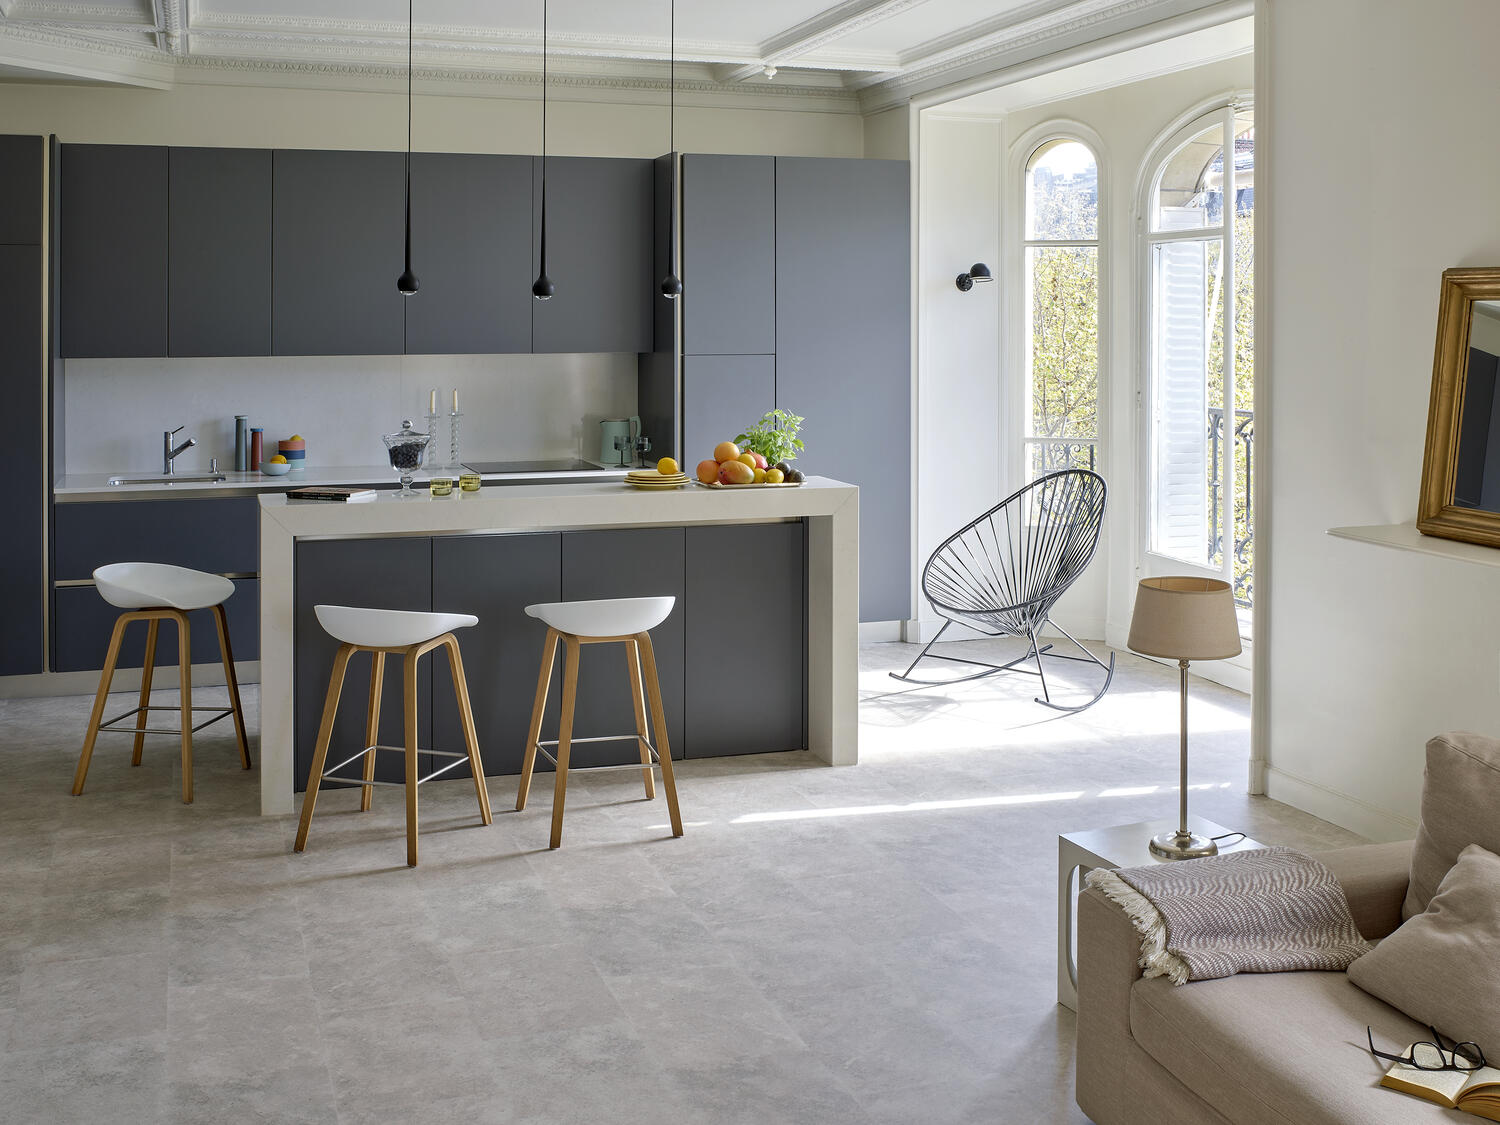 Bucătărie decorată minimalist cu mobilier în nuanțe neutre și ferestre largi